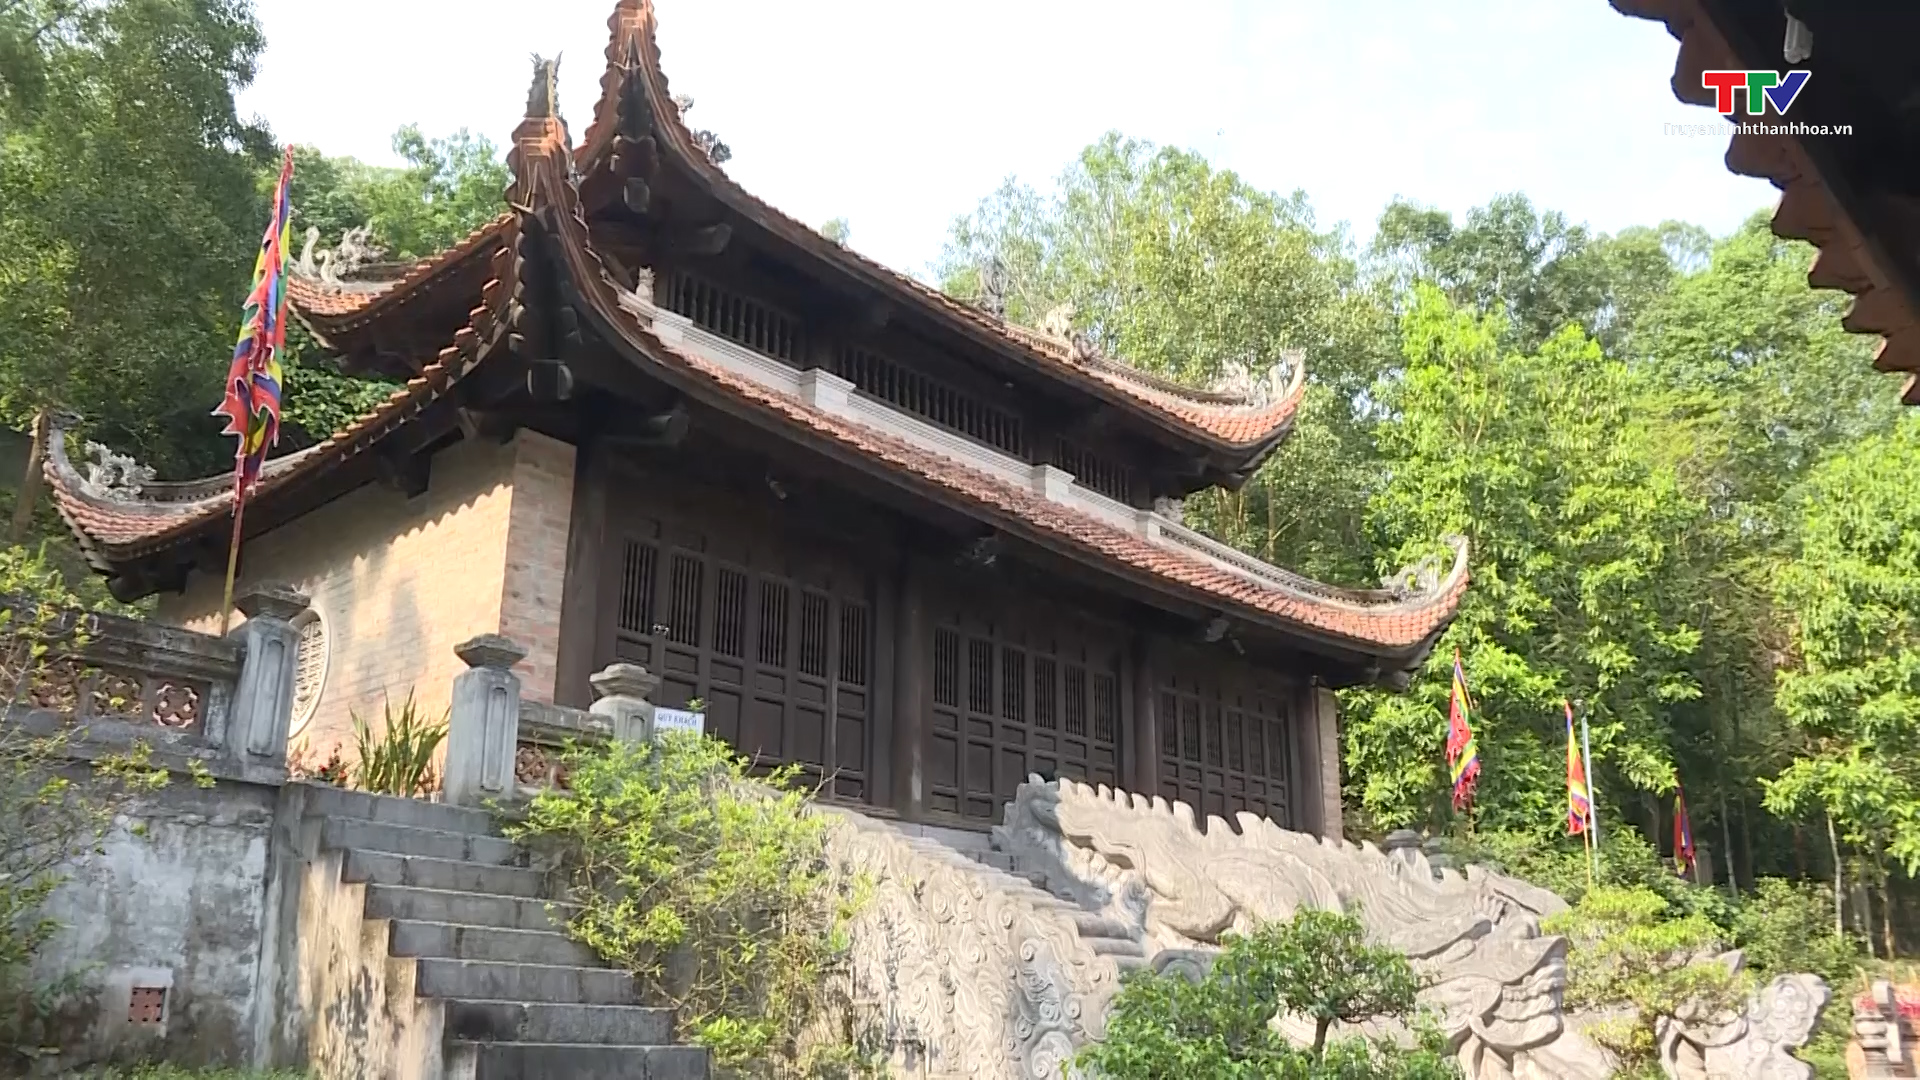 Phát huy giá trị lịch sử, kiến trúc, nghệ thuật Khu di tích Bà Triệu gắn với phát triển du lịch - Ảnh 4.